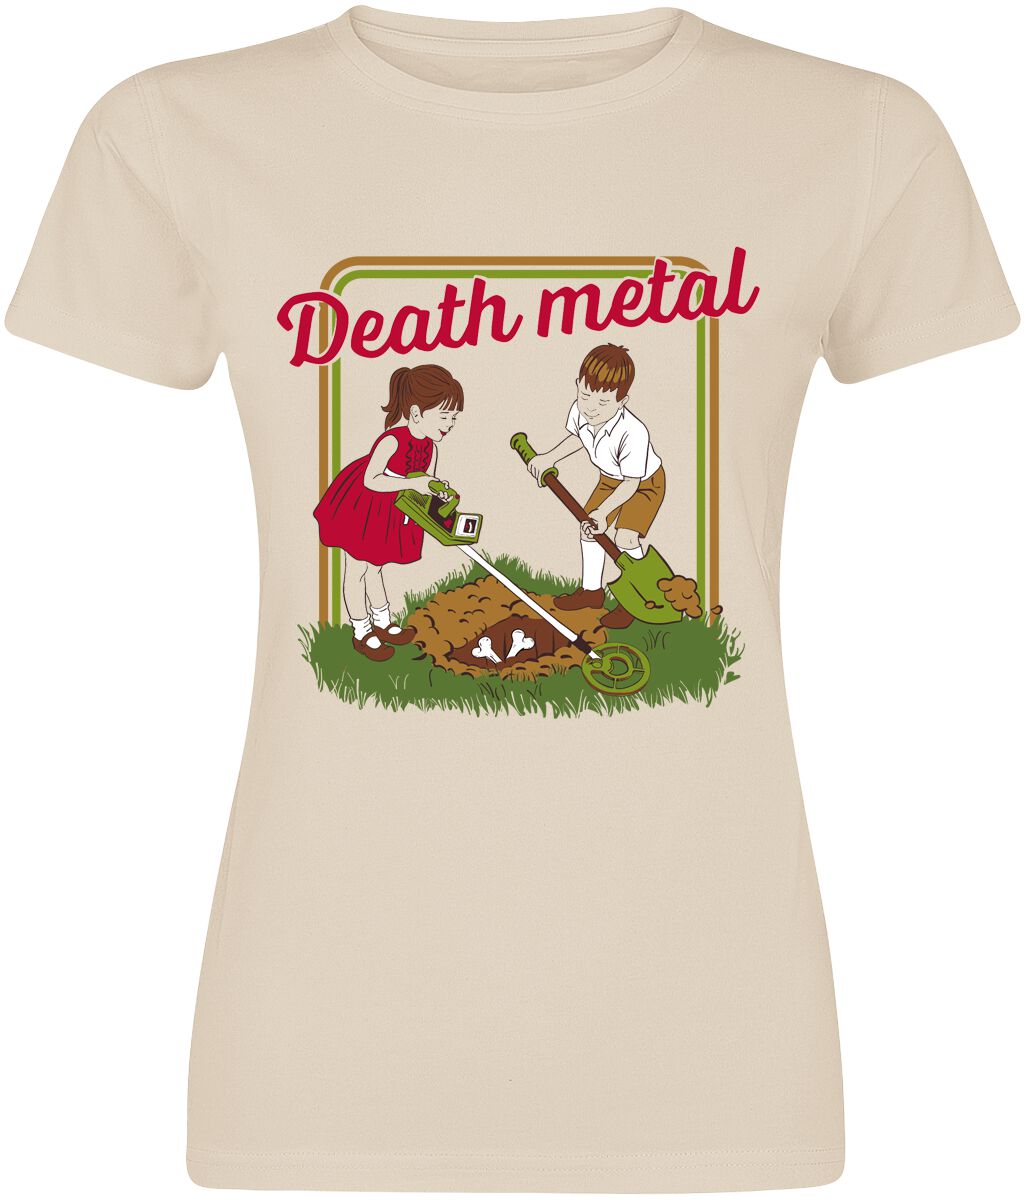 Fun Shirt Slogans - Death Metal T-Shirt multicolour